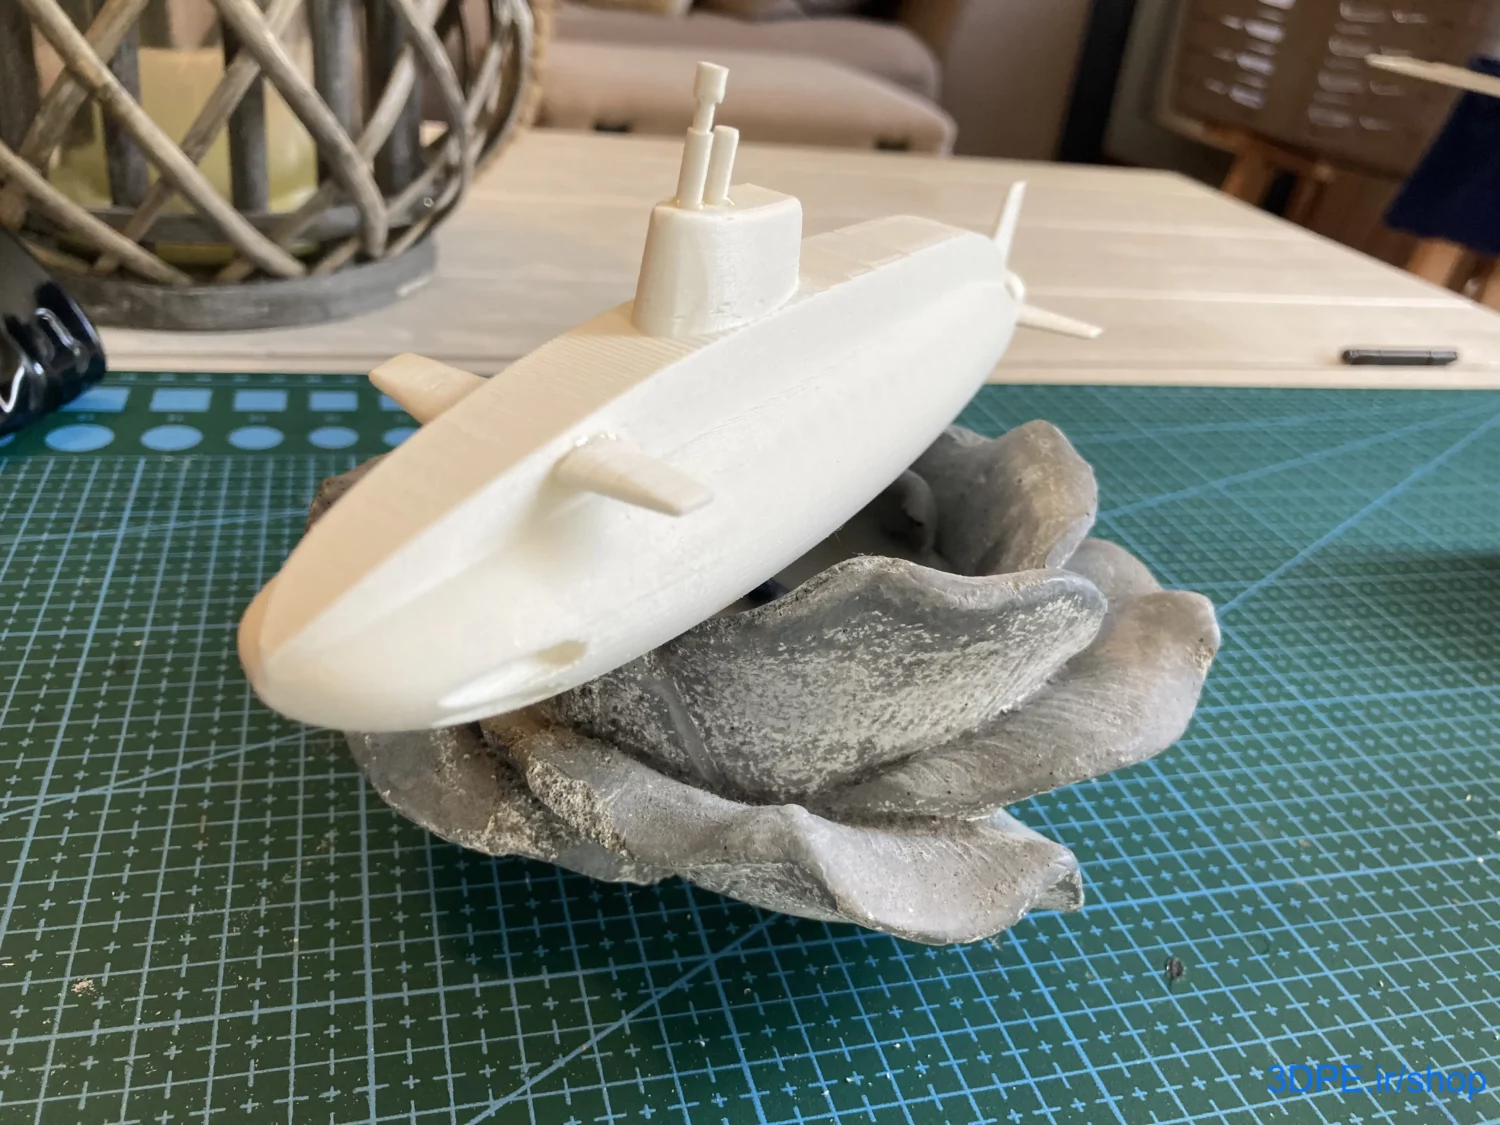 دانلود رایگان مدل سه بعدی زیردریایی